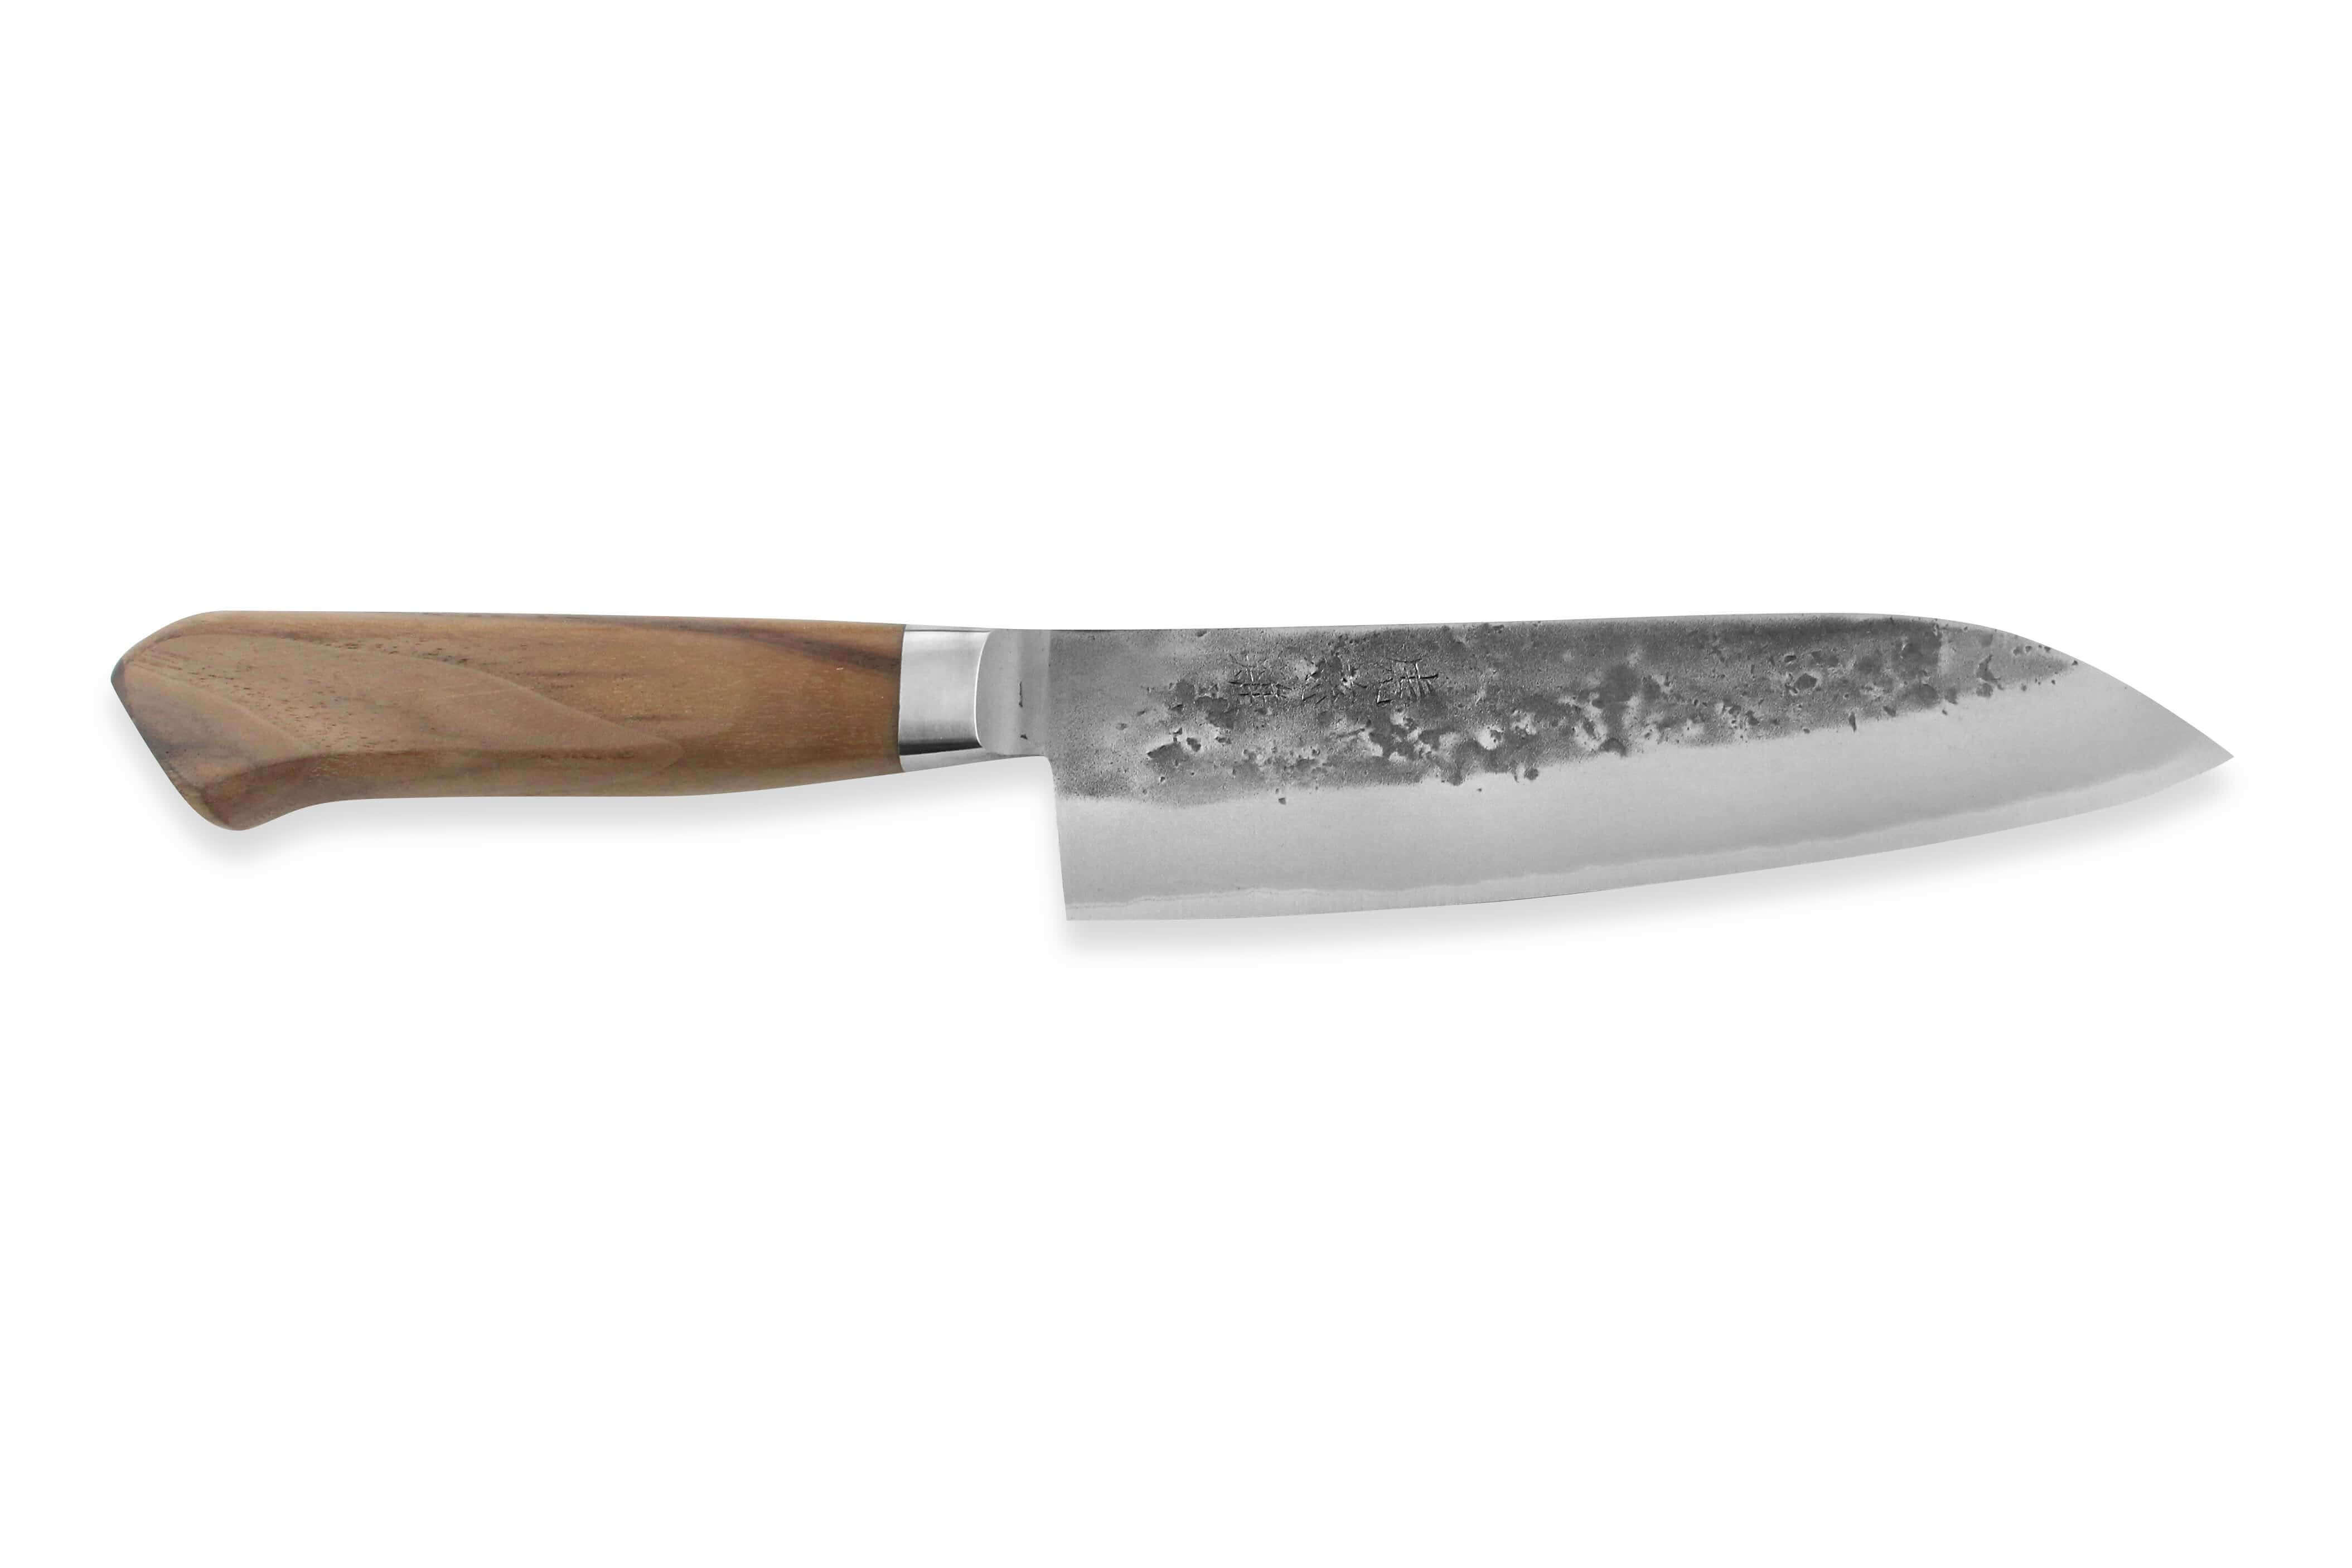 Couteau de cuisine Japonais Santoku FK2 17 cm par De Buyer - REF 4281.17